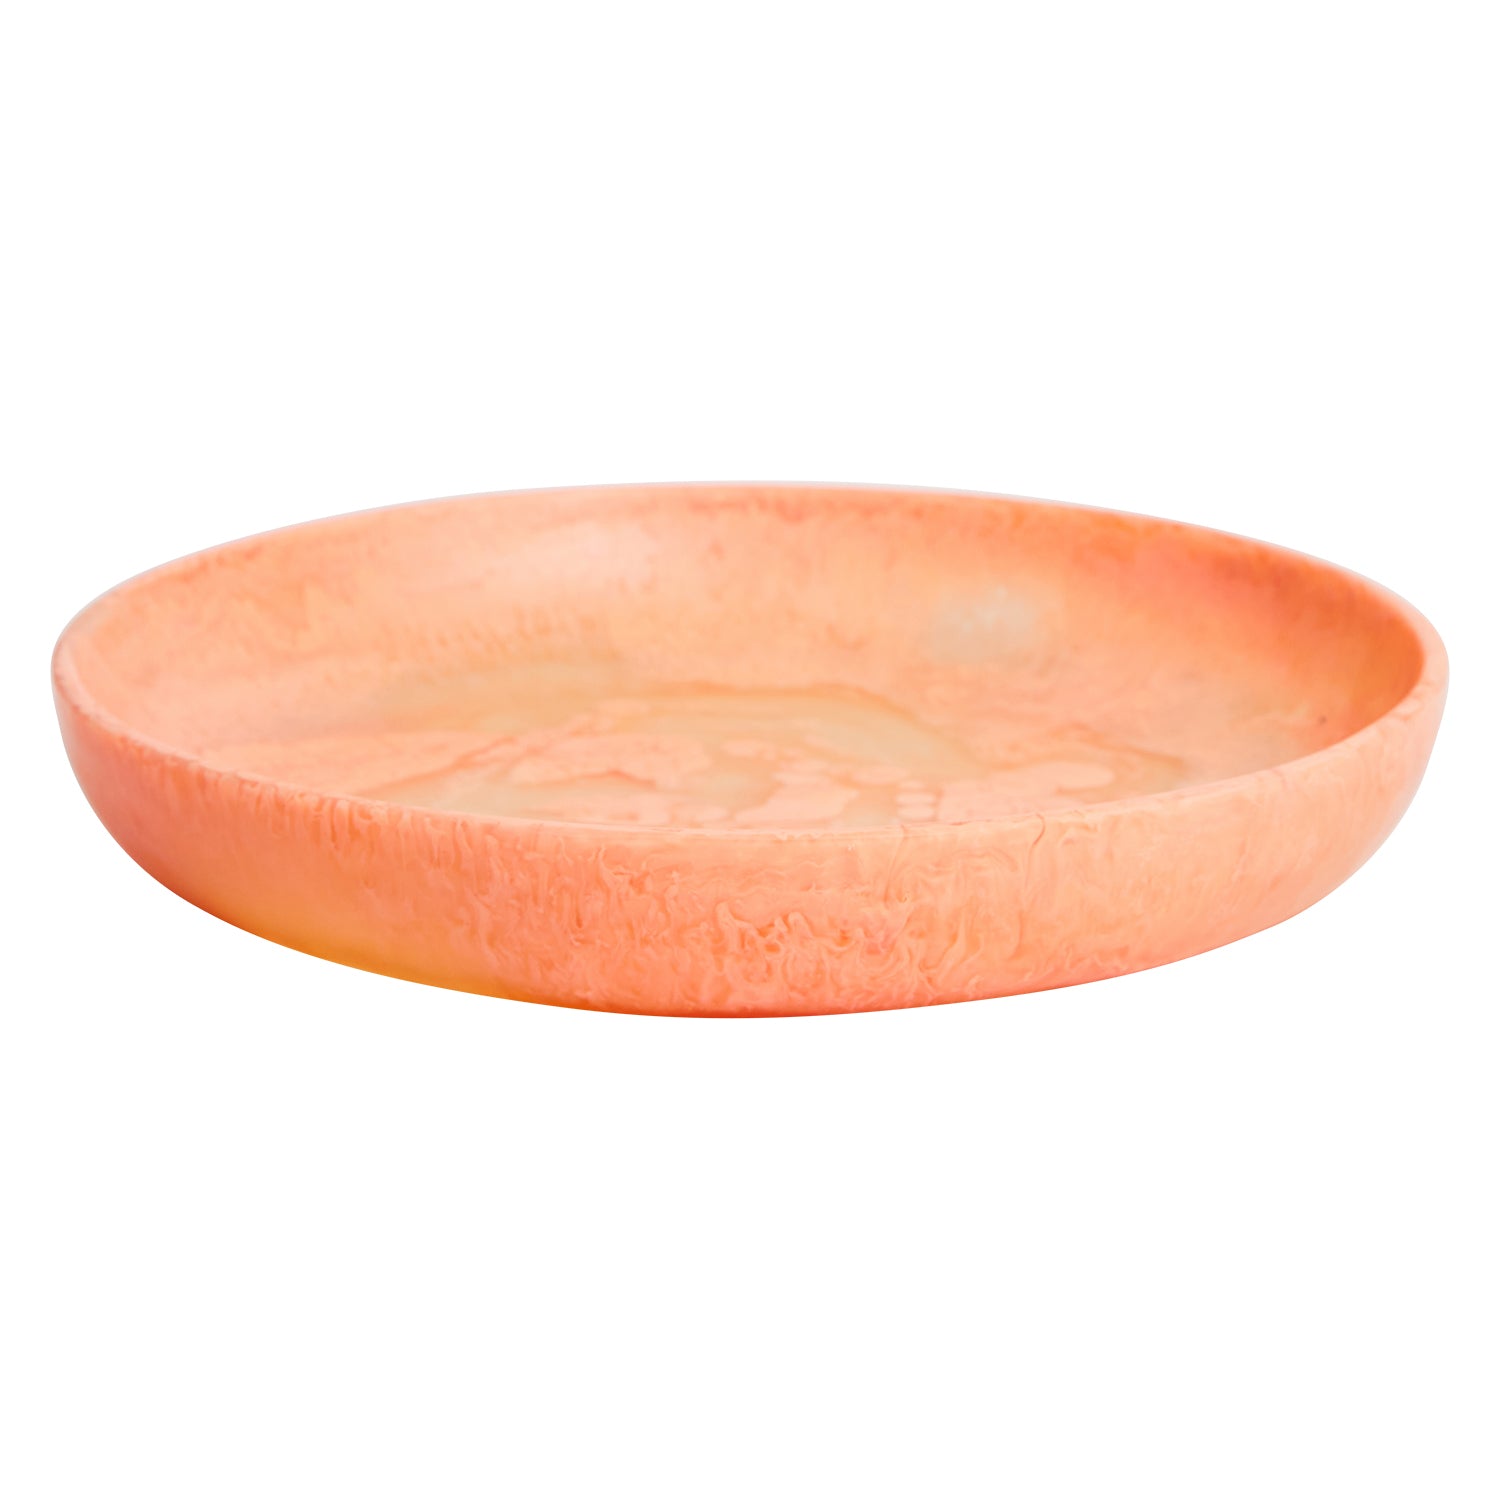 Medina Platter by Sage & Clare in Caviar colour - light orange